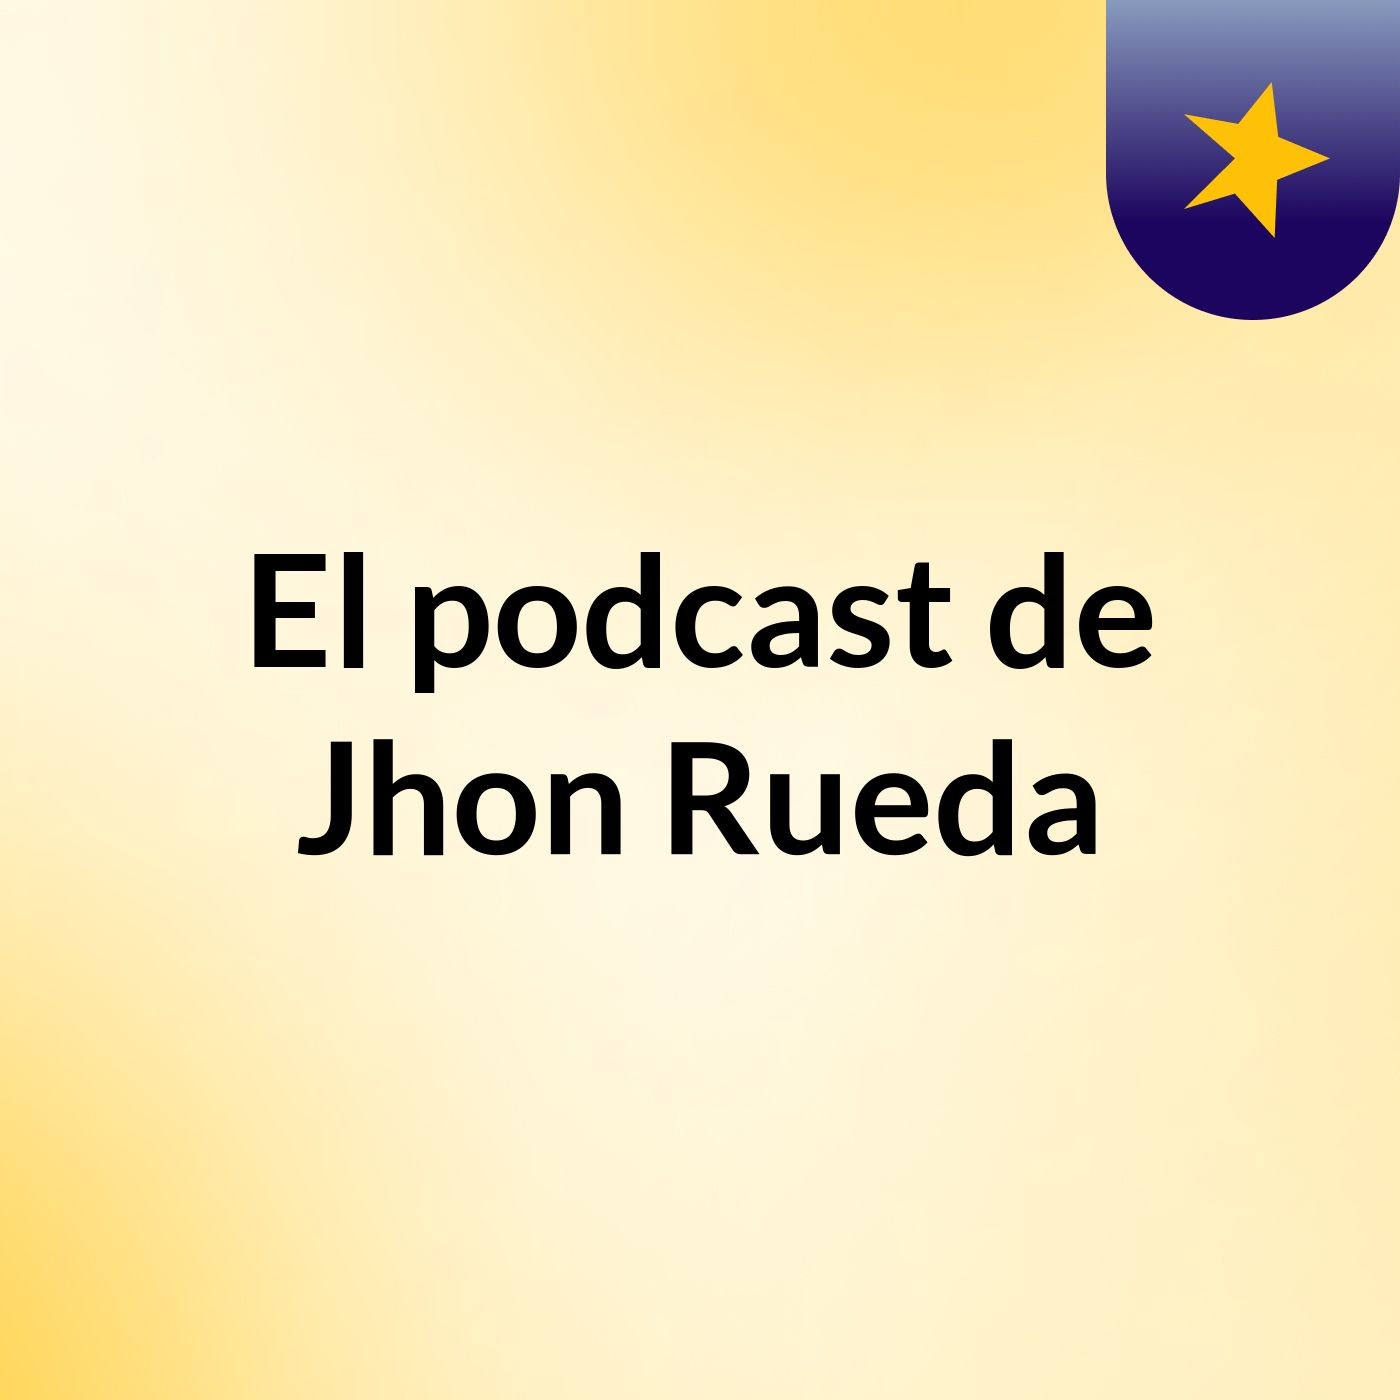 Empatia Dos36 - El podcast de Jhon Rueda